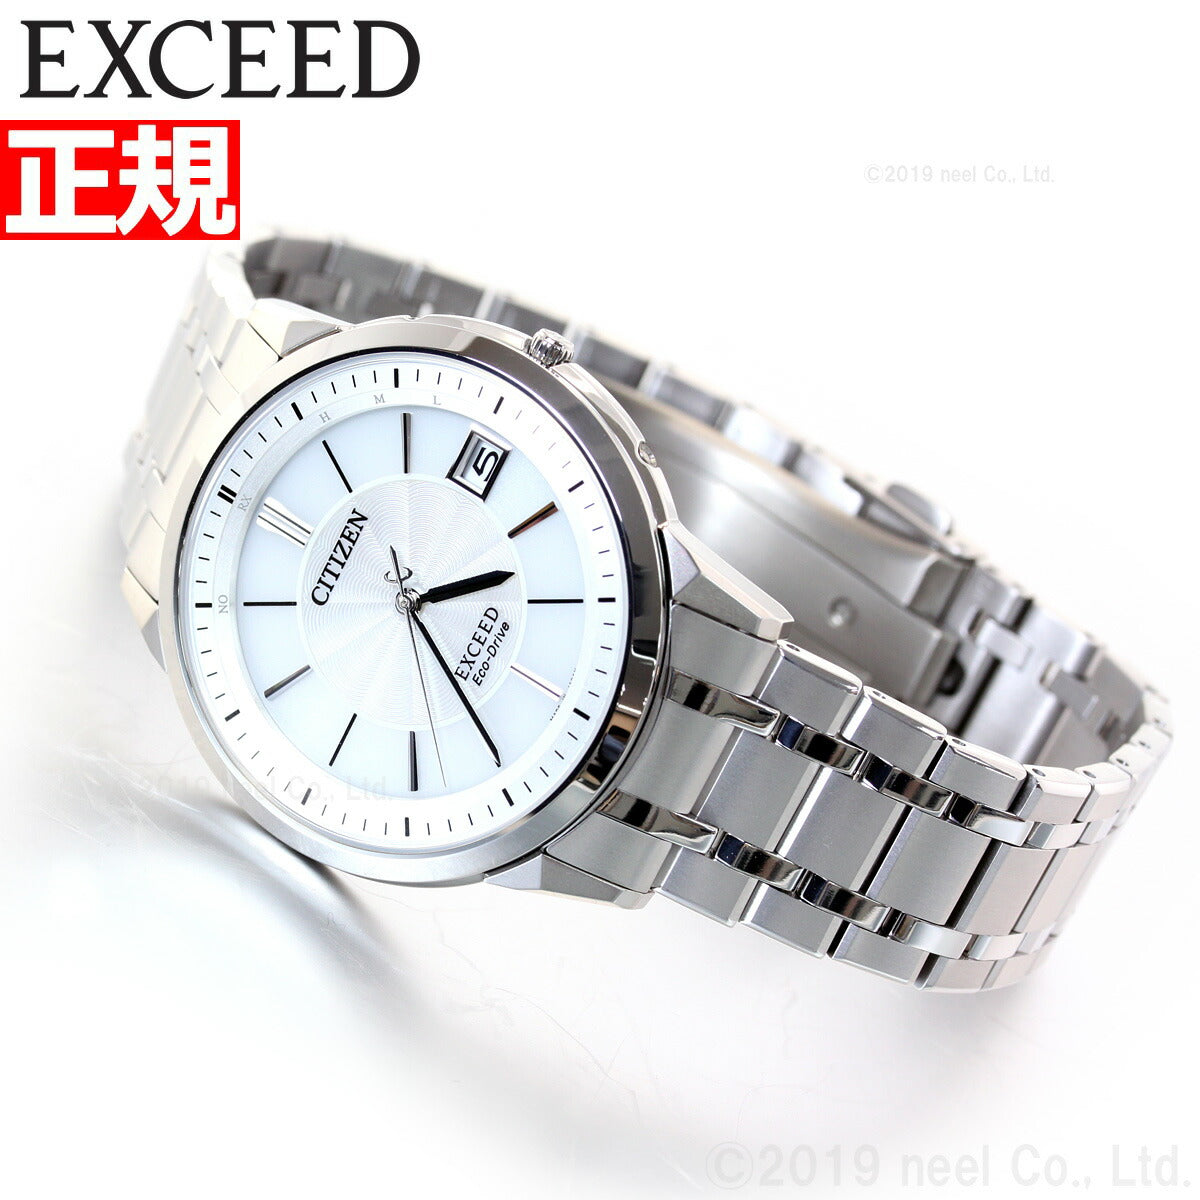 シチズン エクシード 腕時計 エコ ドライブ チタン製 世界最薄 電波時計 メンズ CITIZEN EXCEED EBG74-5023